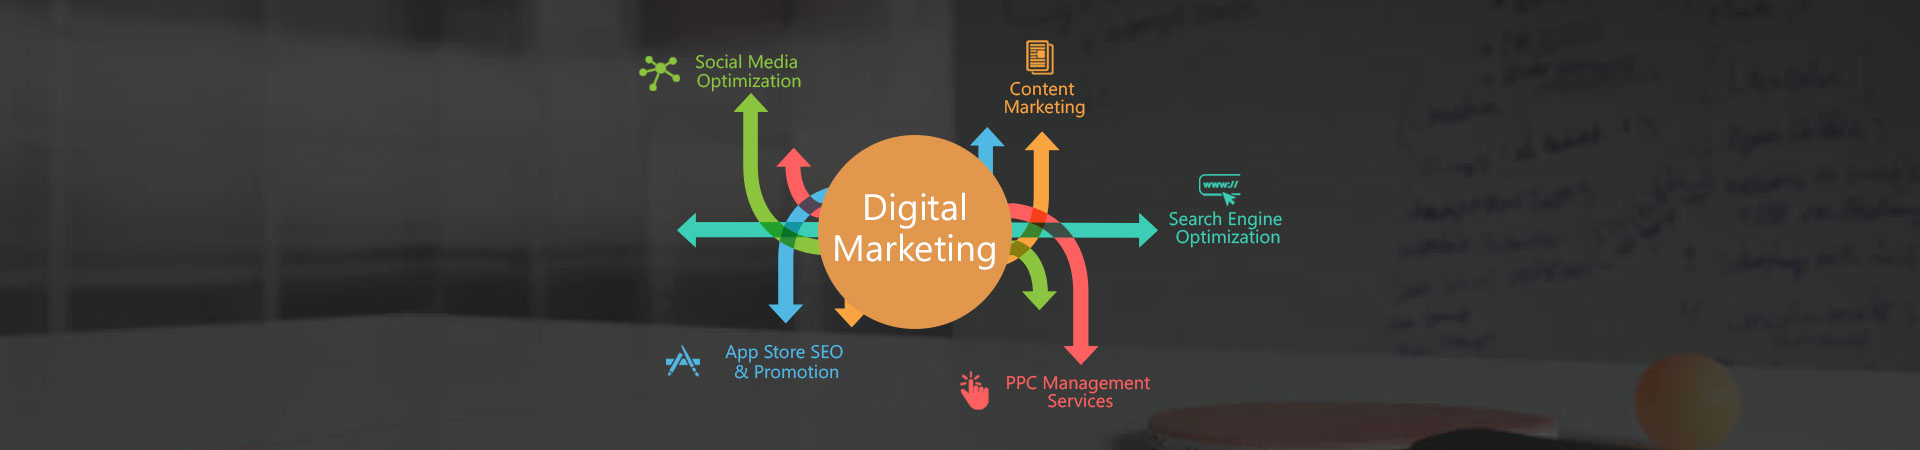 digital_marketing_advanceidea